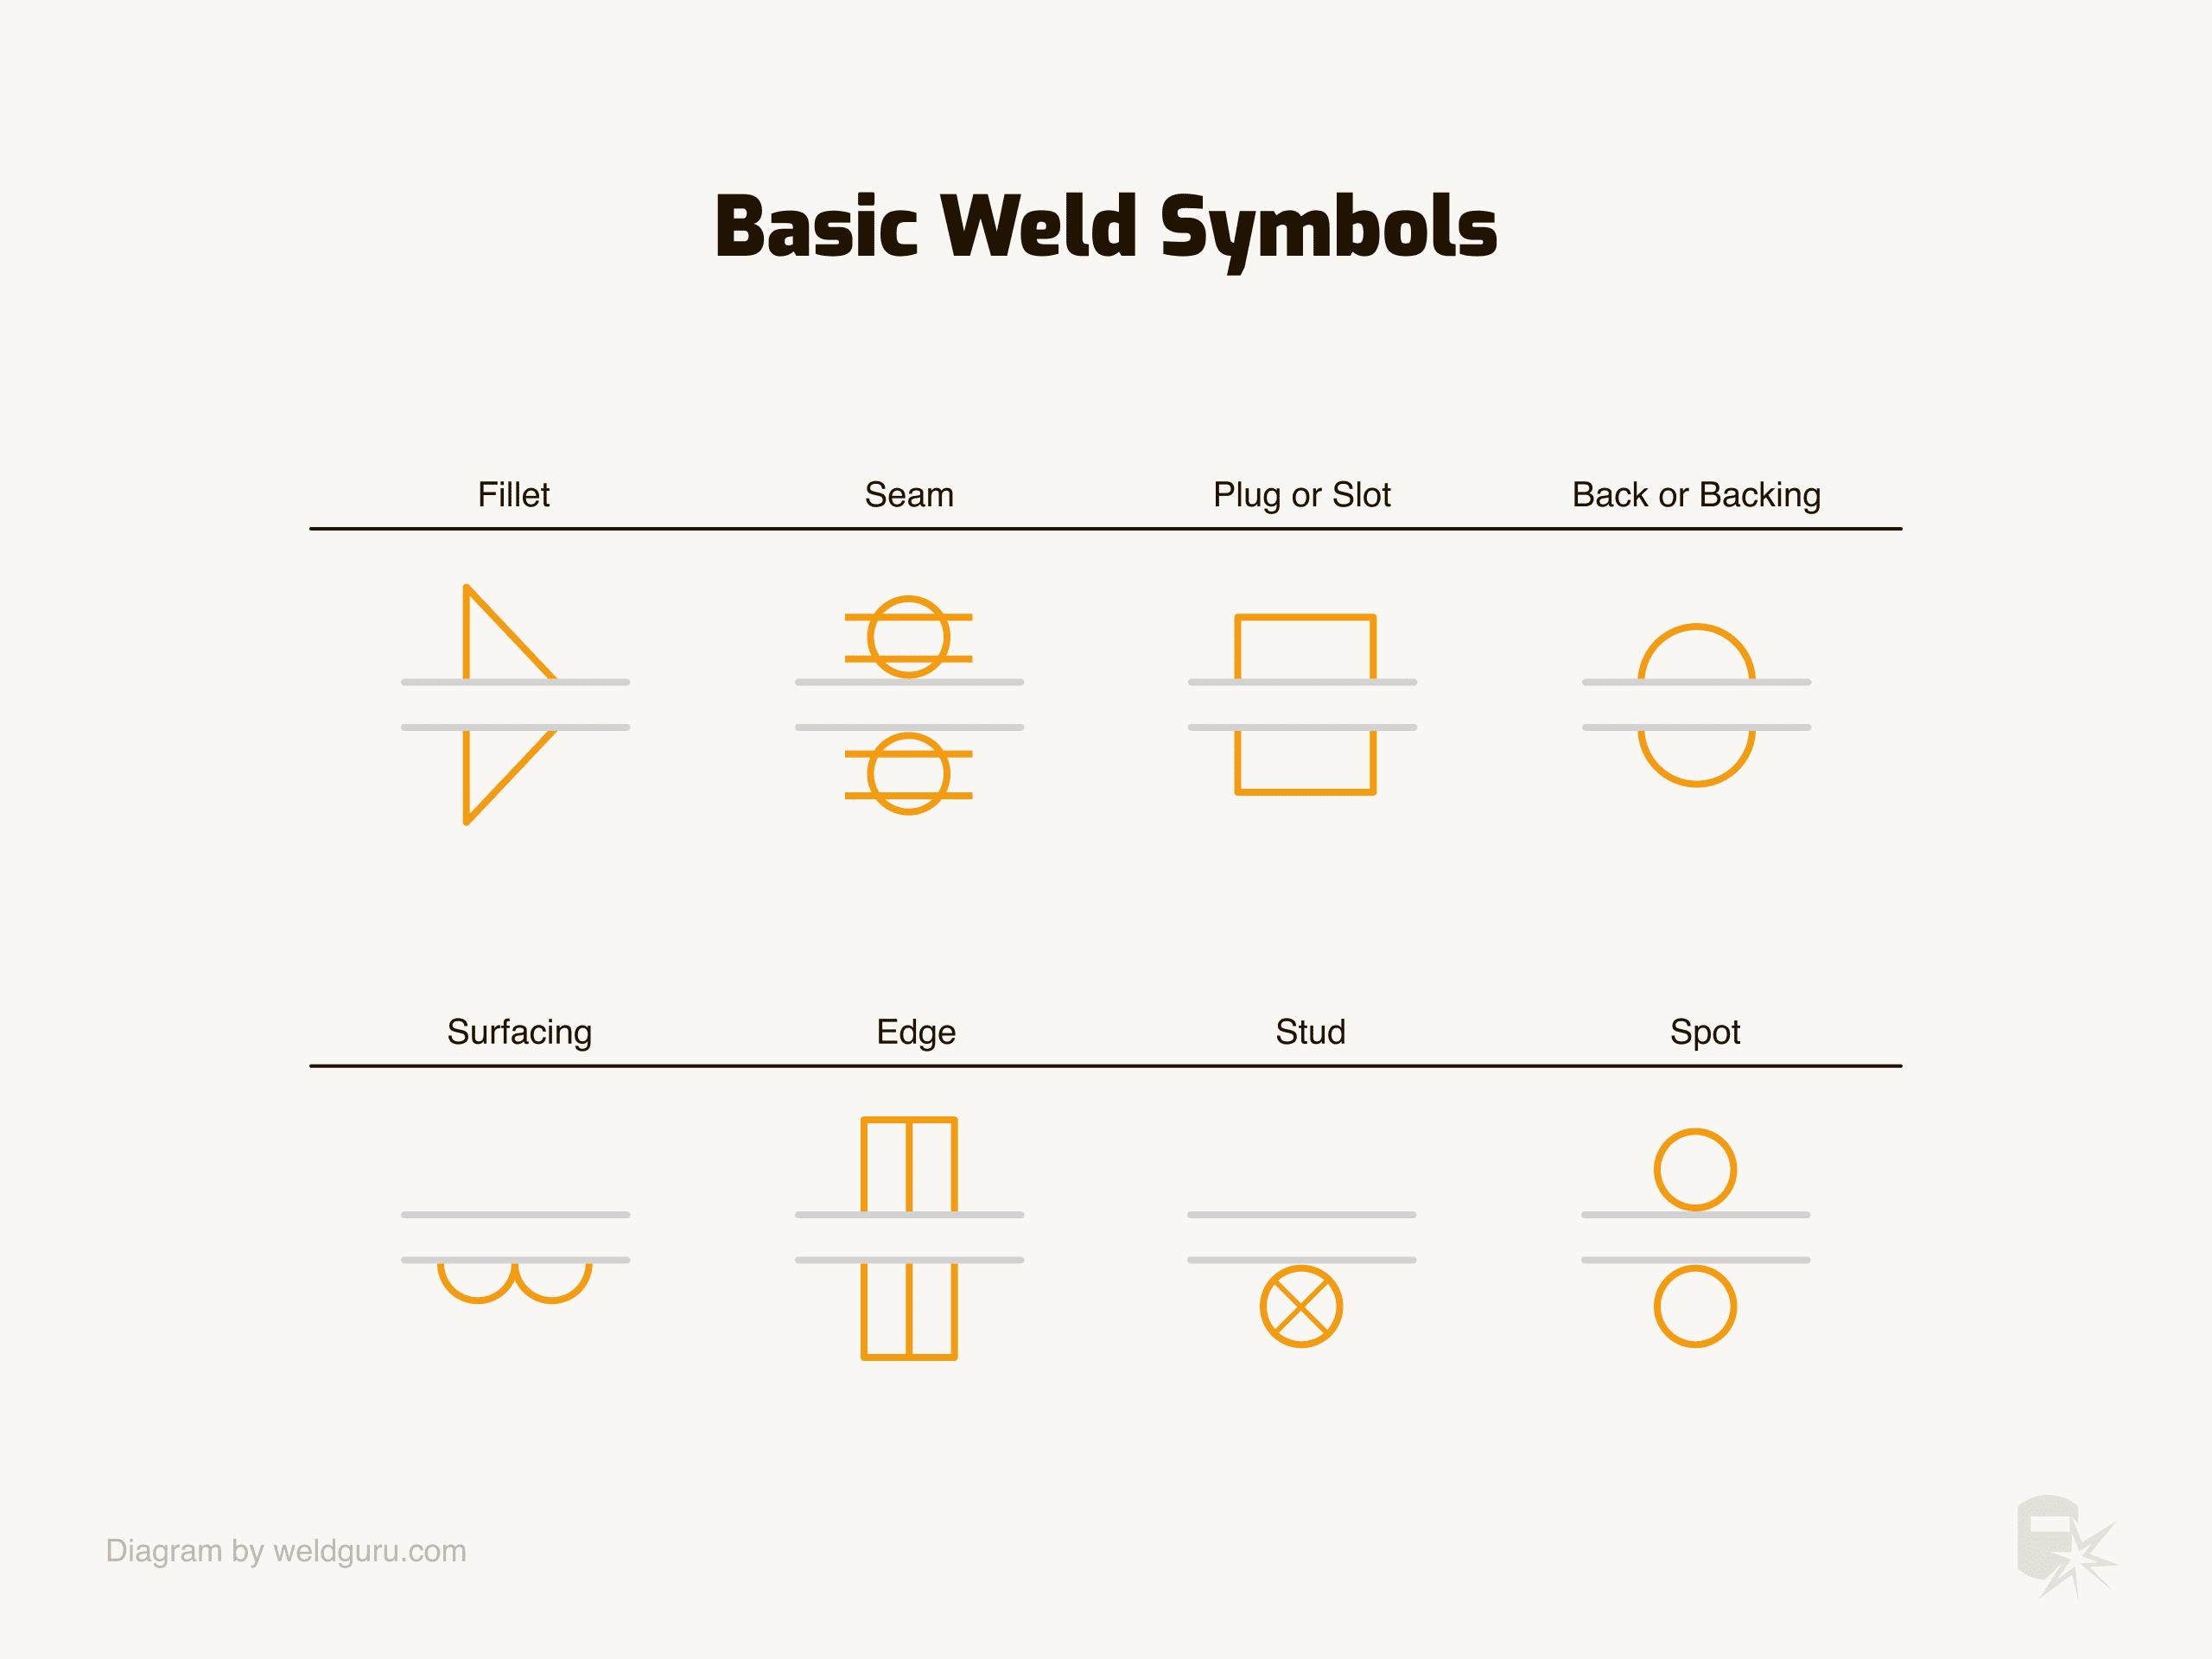 Understanding Weld symbols: The groove weld - Meyer Tool & Mfg.